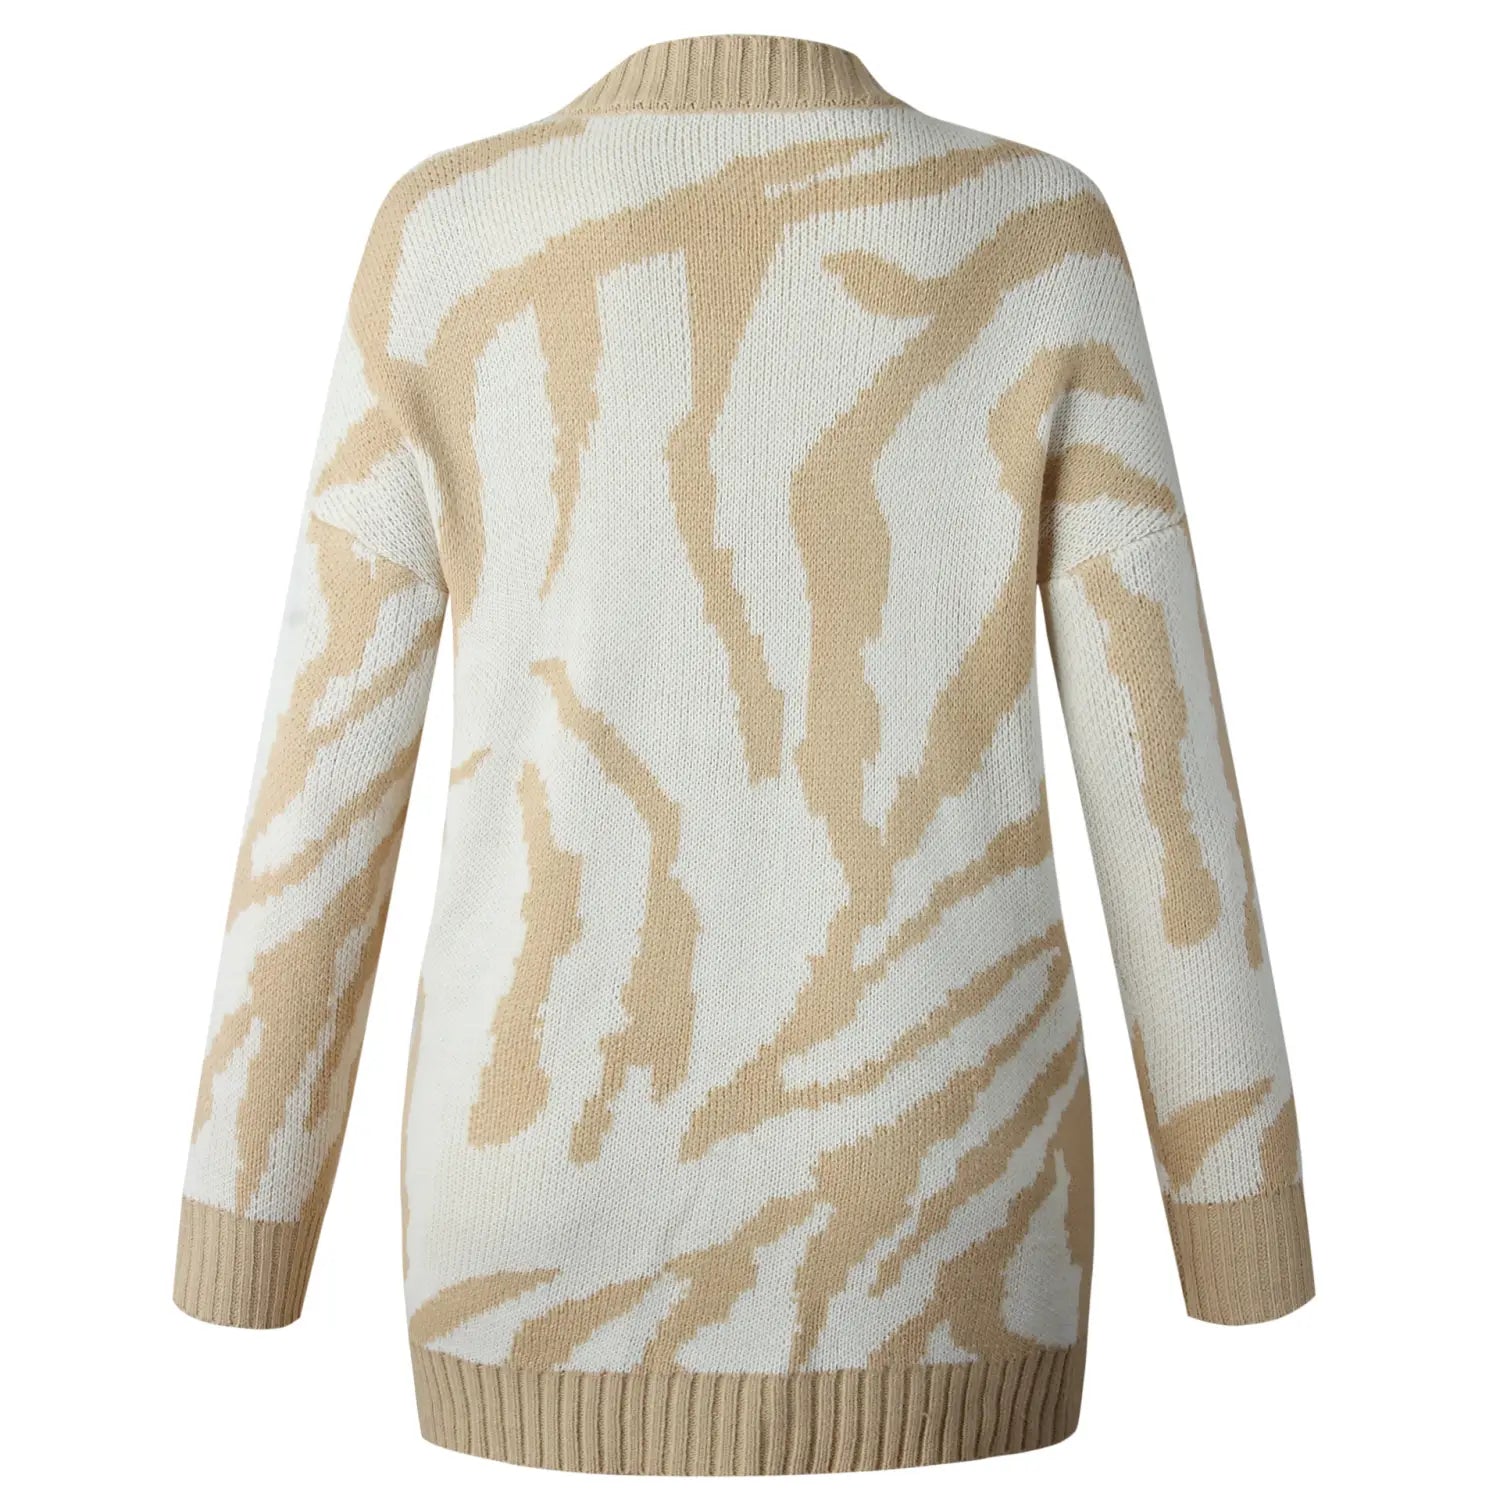 Lovemi - Medium length cardigan sweater coat